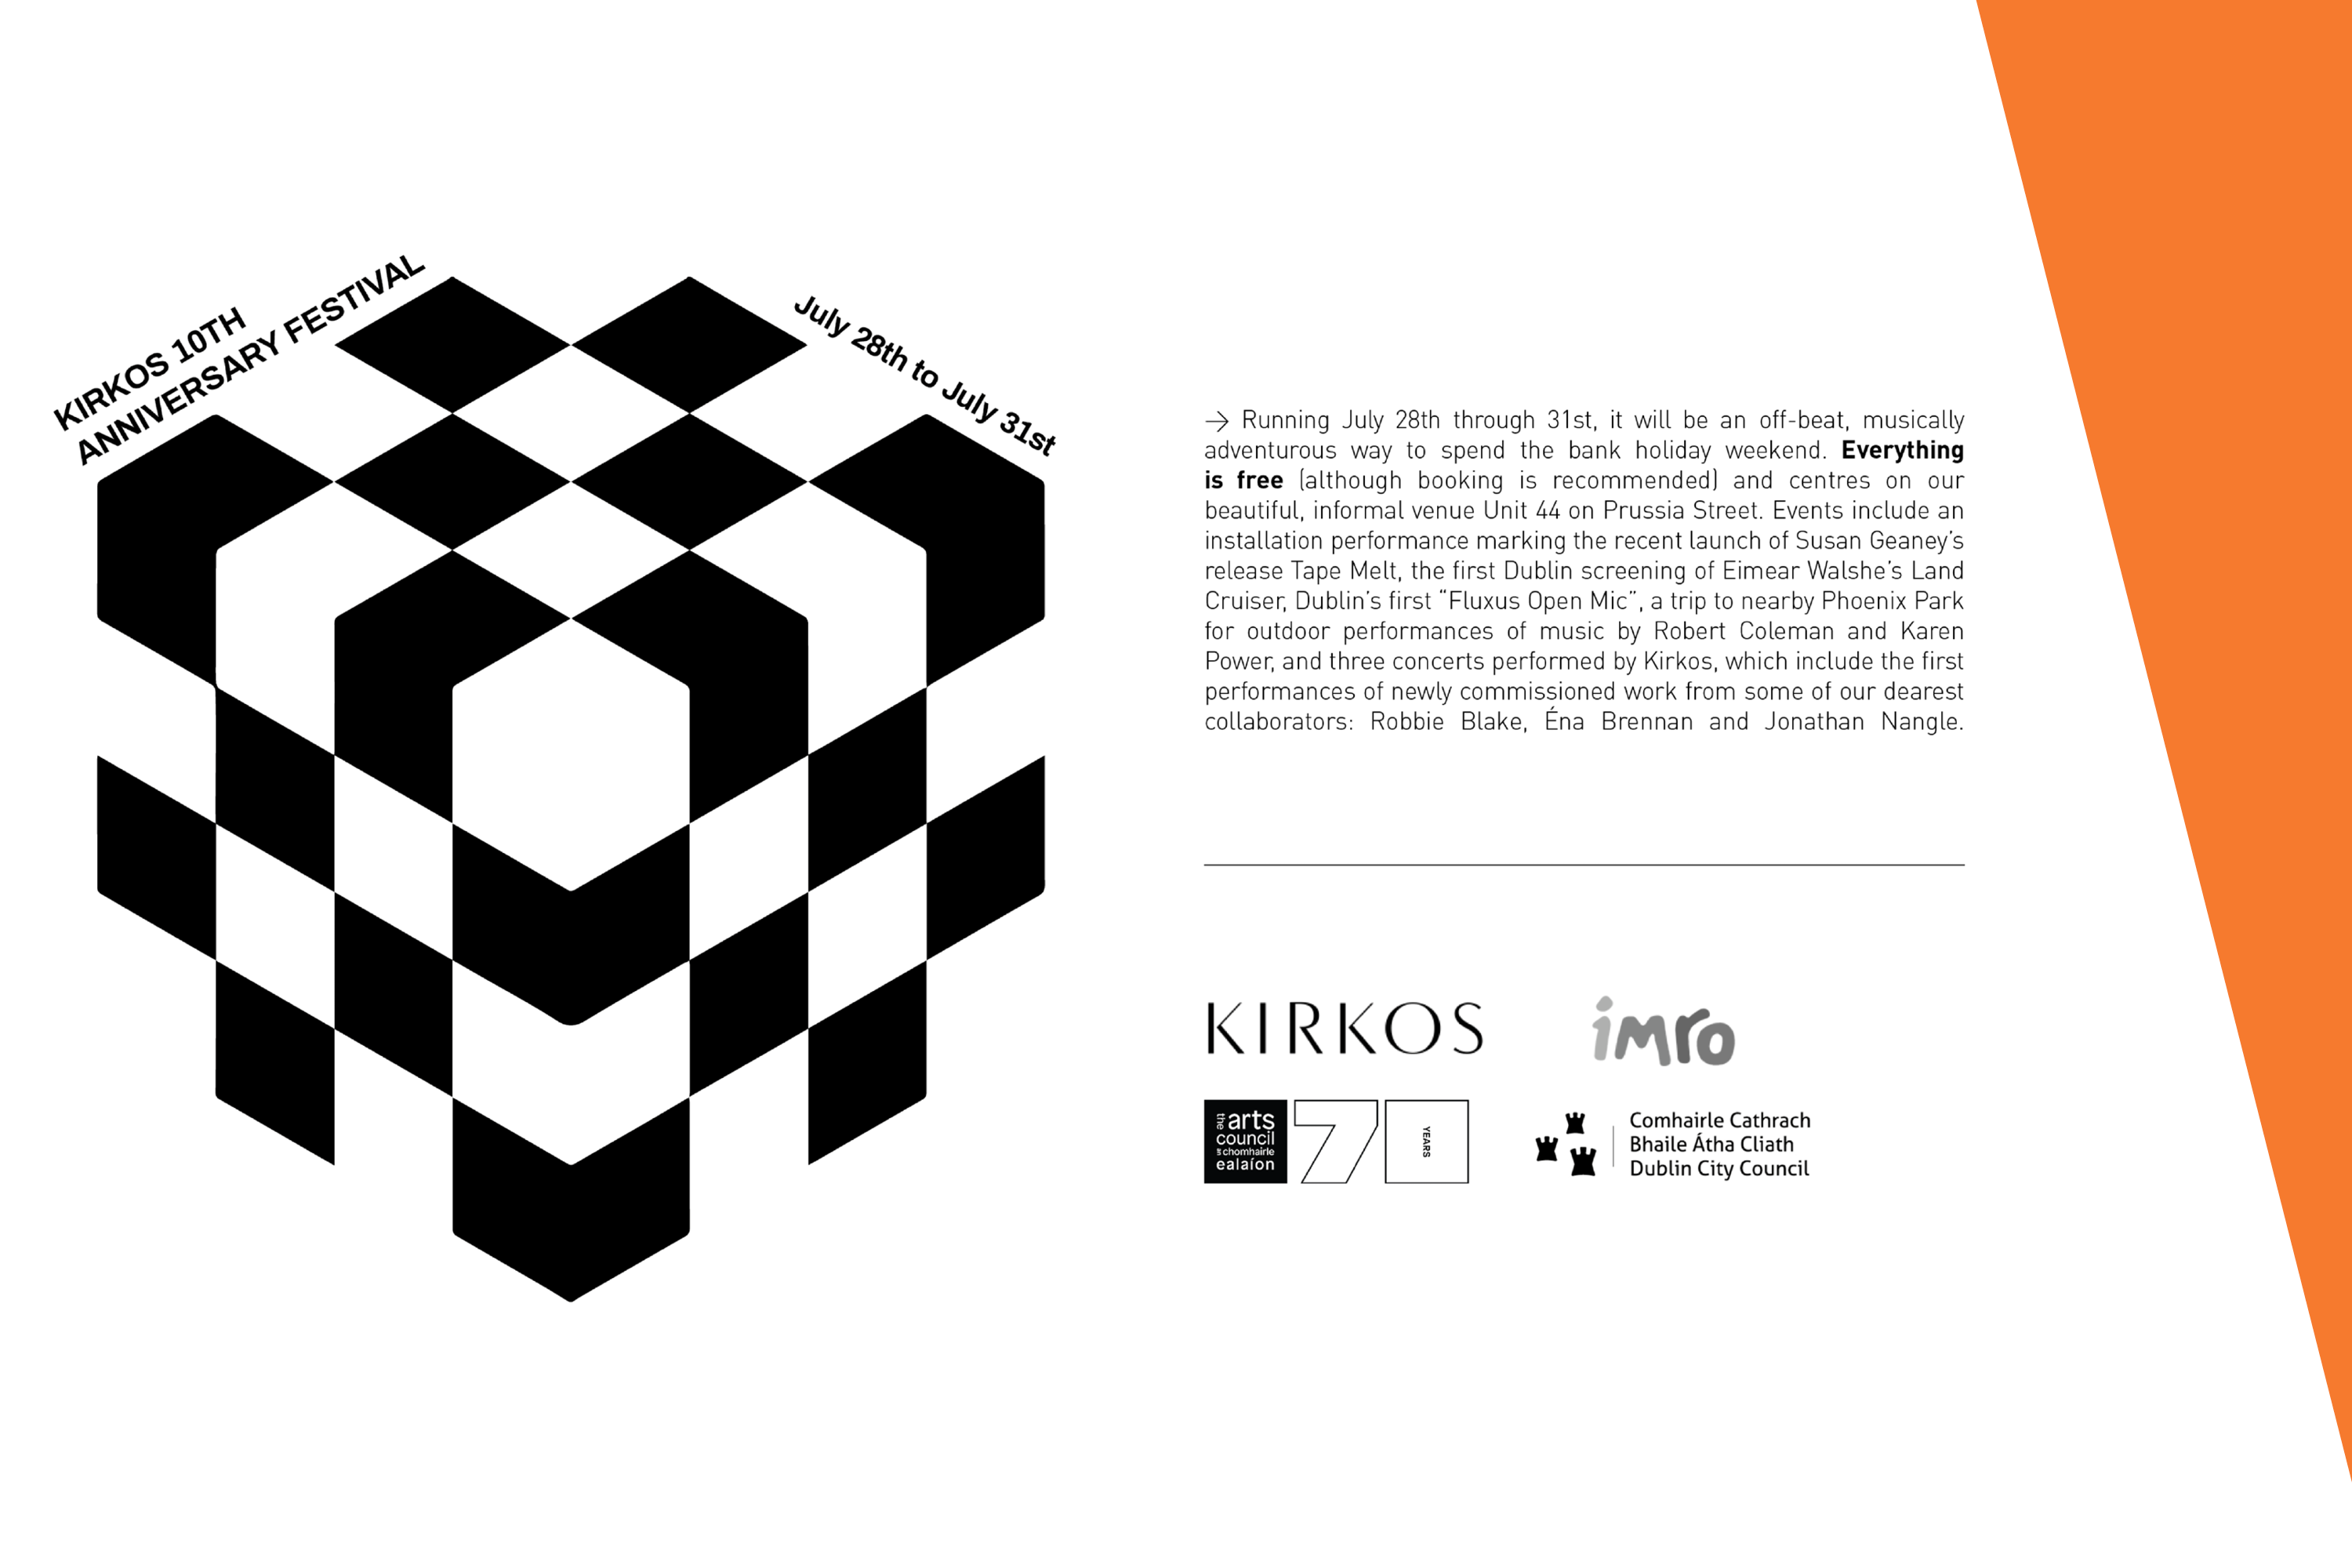 Kirkos 10th Anniversary — CONCERT 3 | The Journal of Music: Irish Music